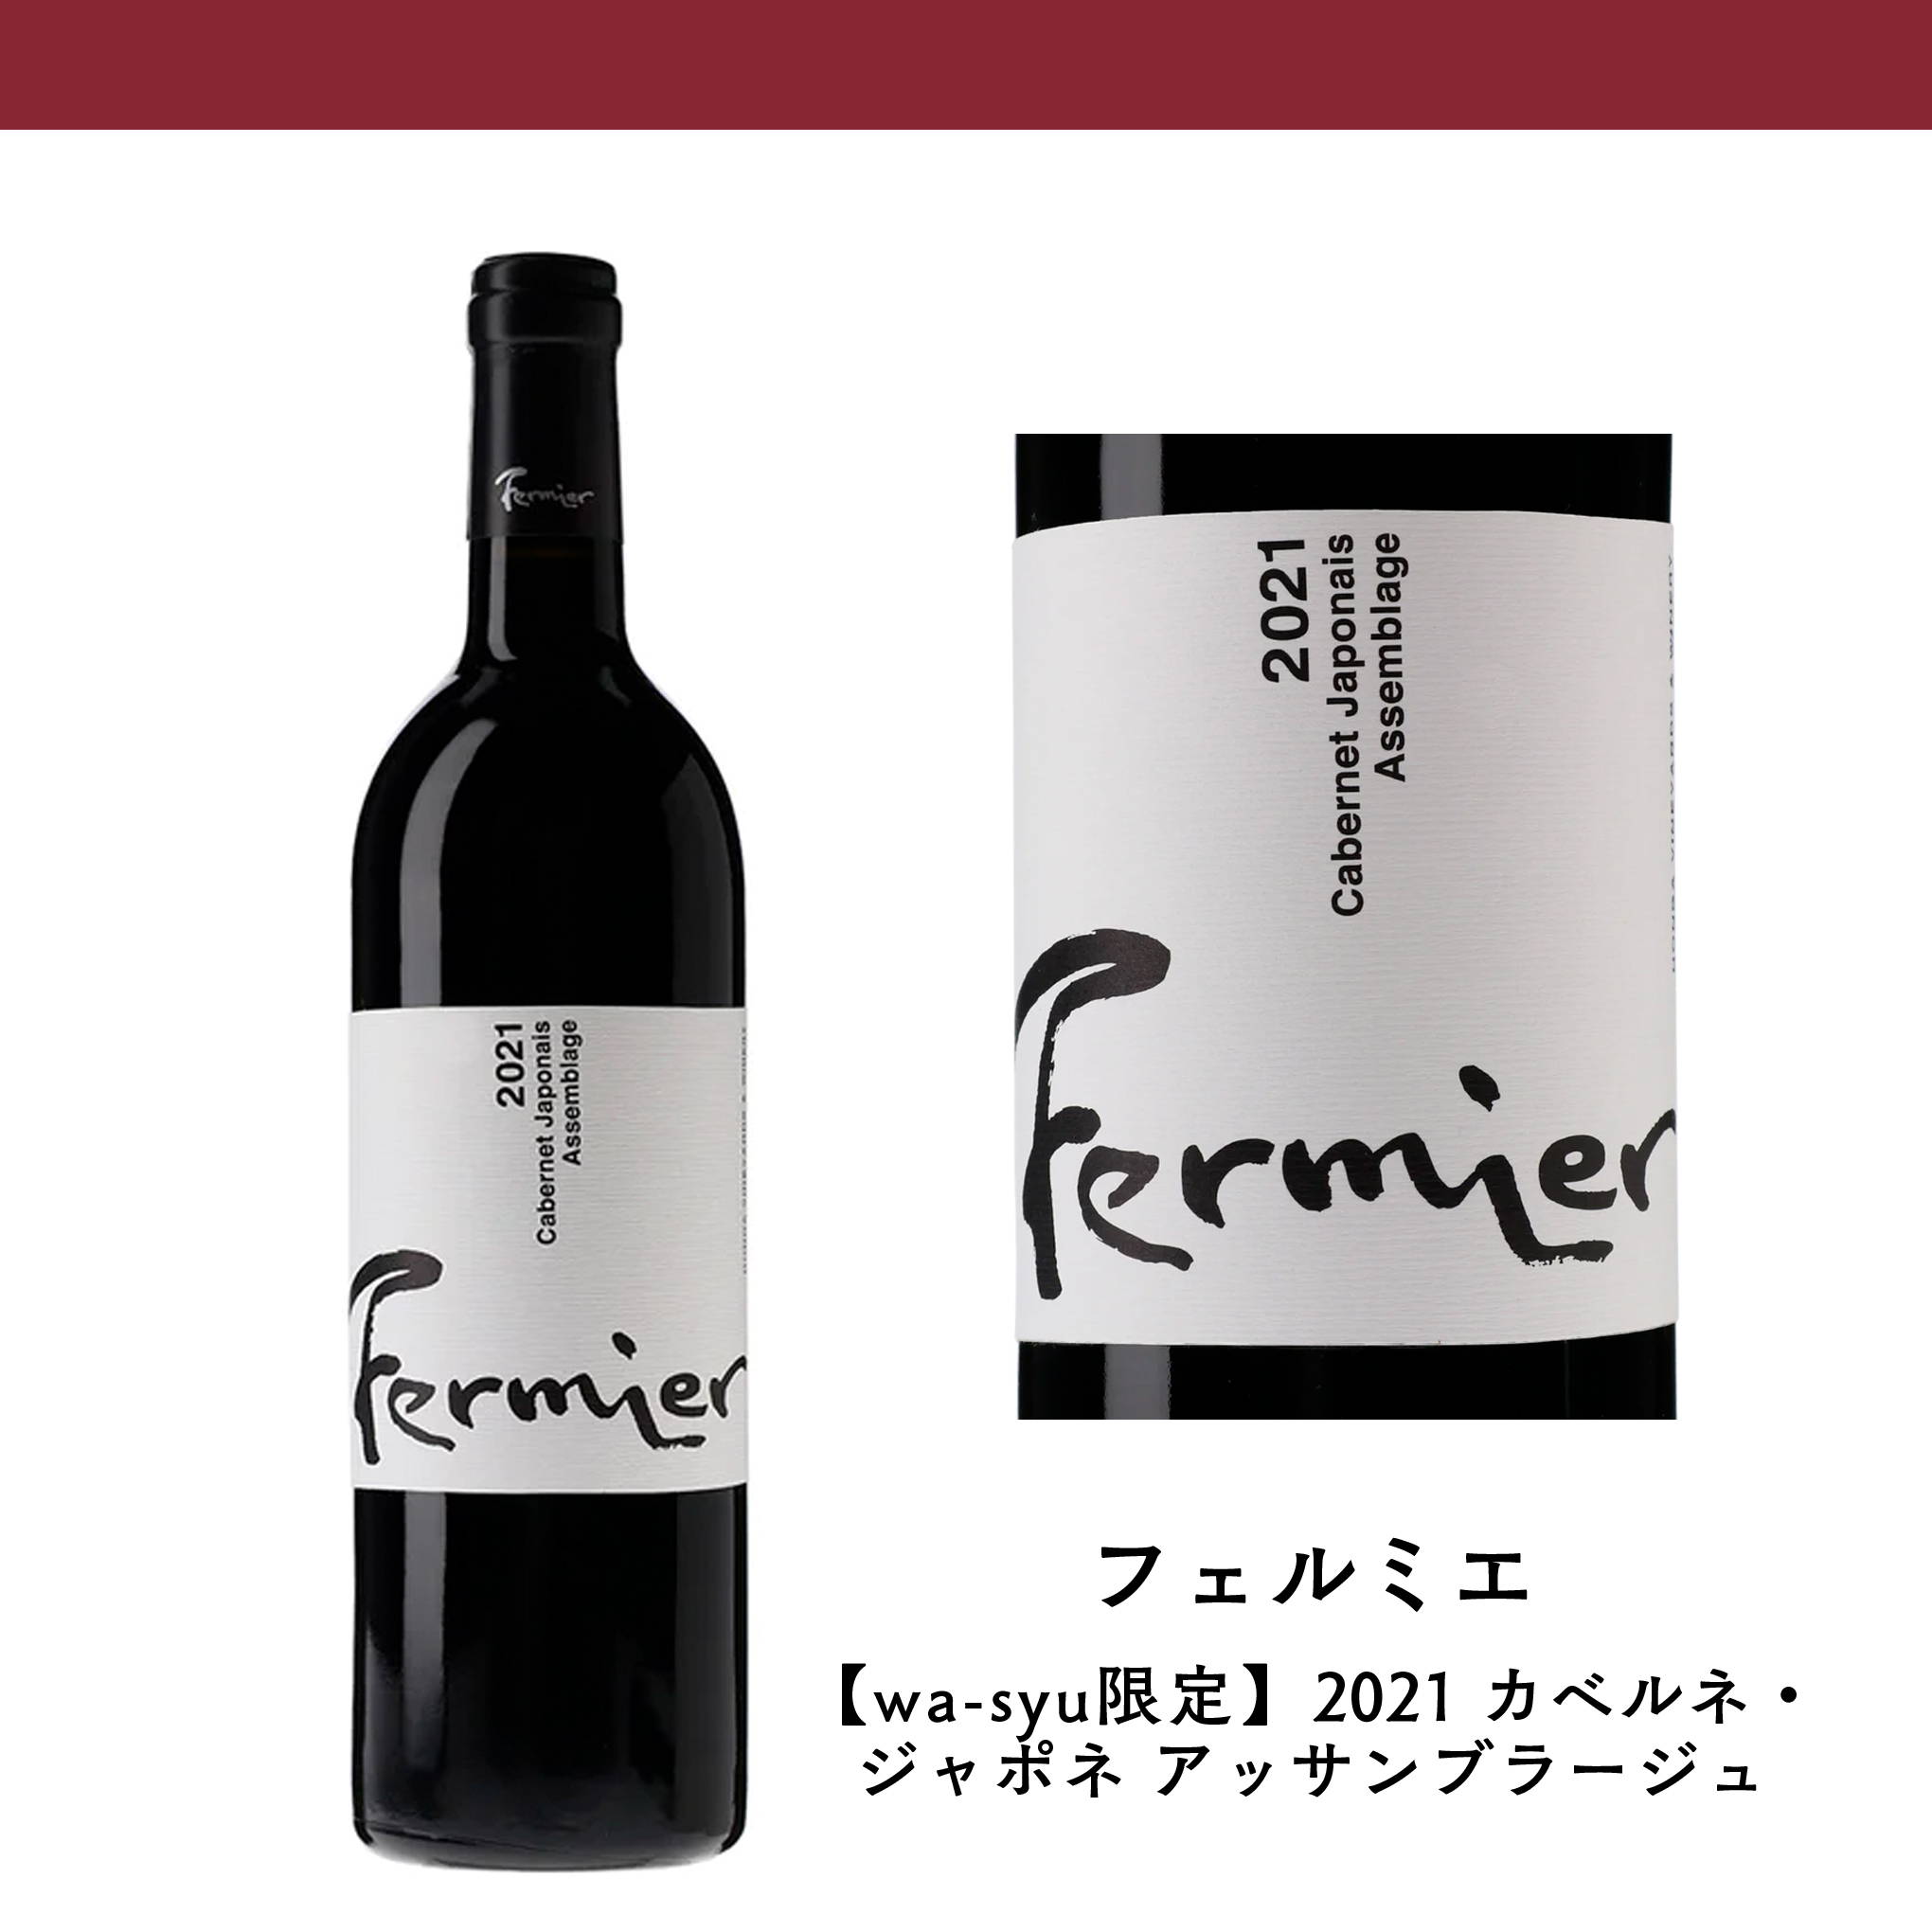 wa-syu限定販売！カベルネ・ソーヴィニヨン、カベルネ・ドルサ、カベルネ・ミトスをブレンドした珍しい『フェルミエ』の赤ワイン。